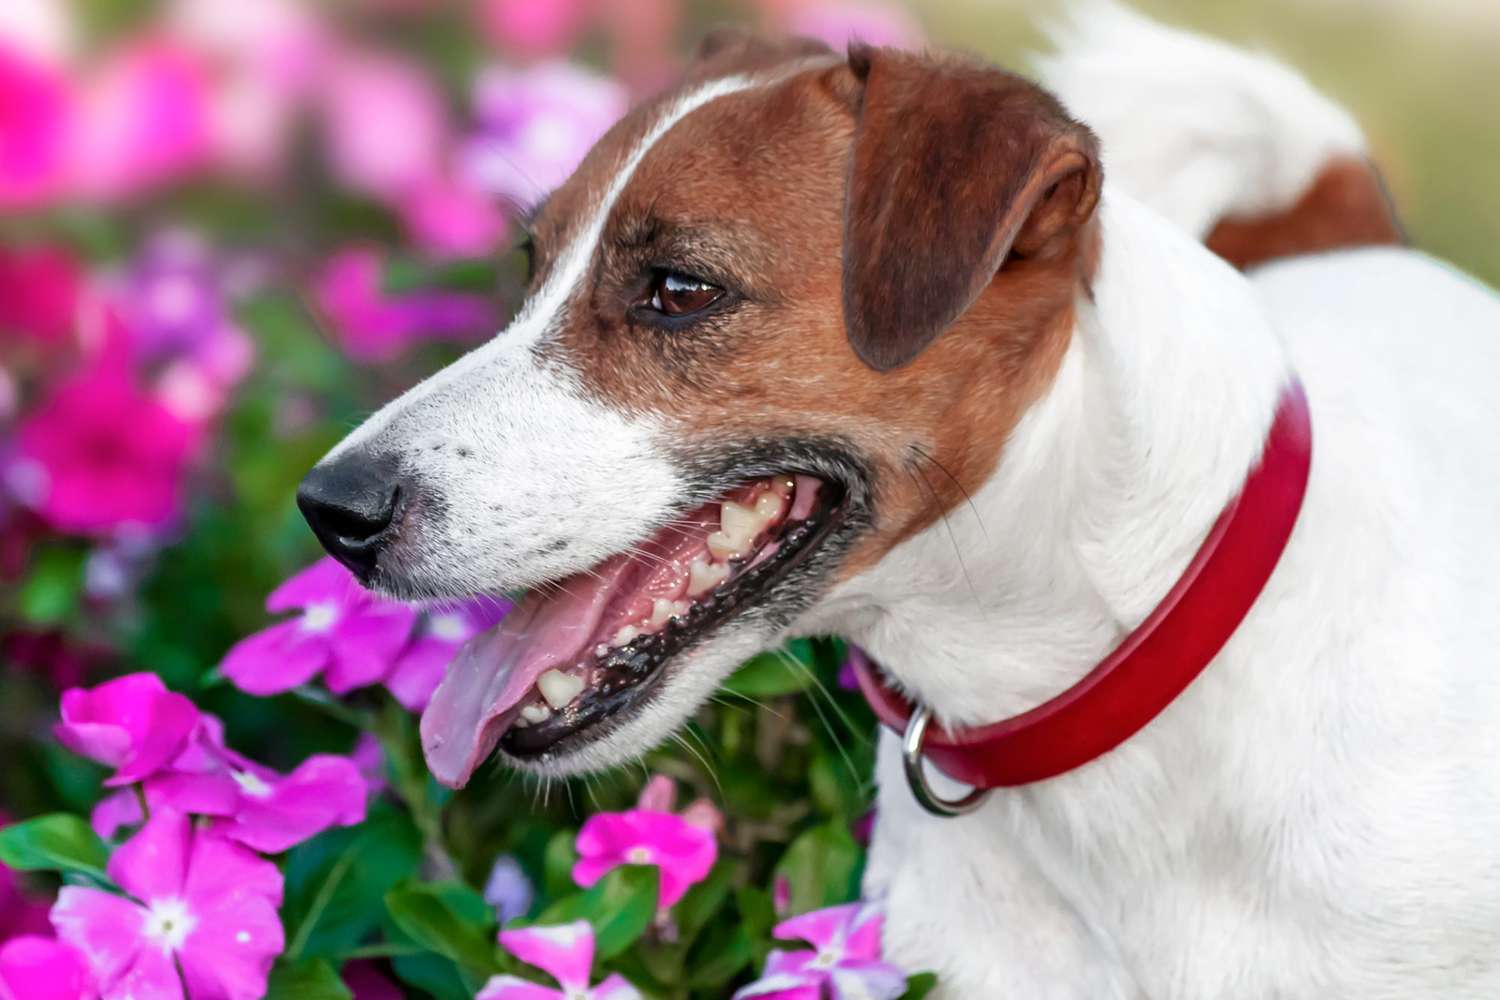 Jack Russell Terrier near flower garden